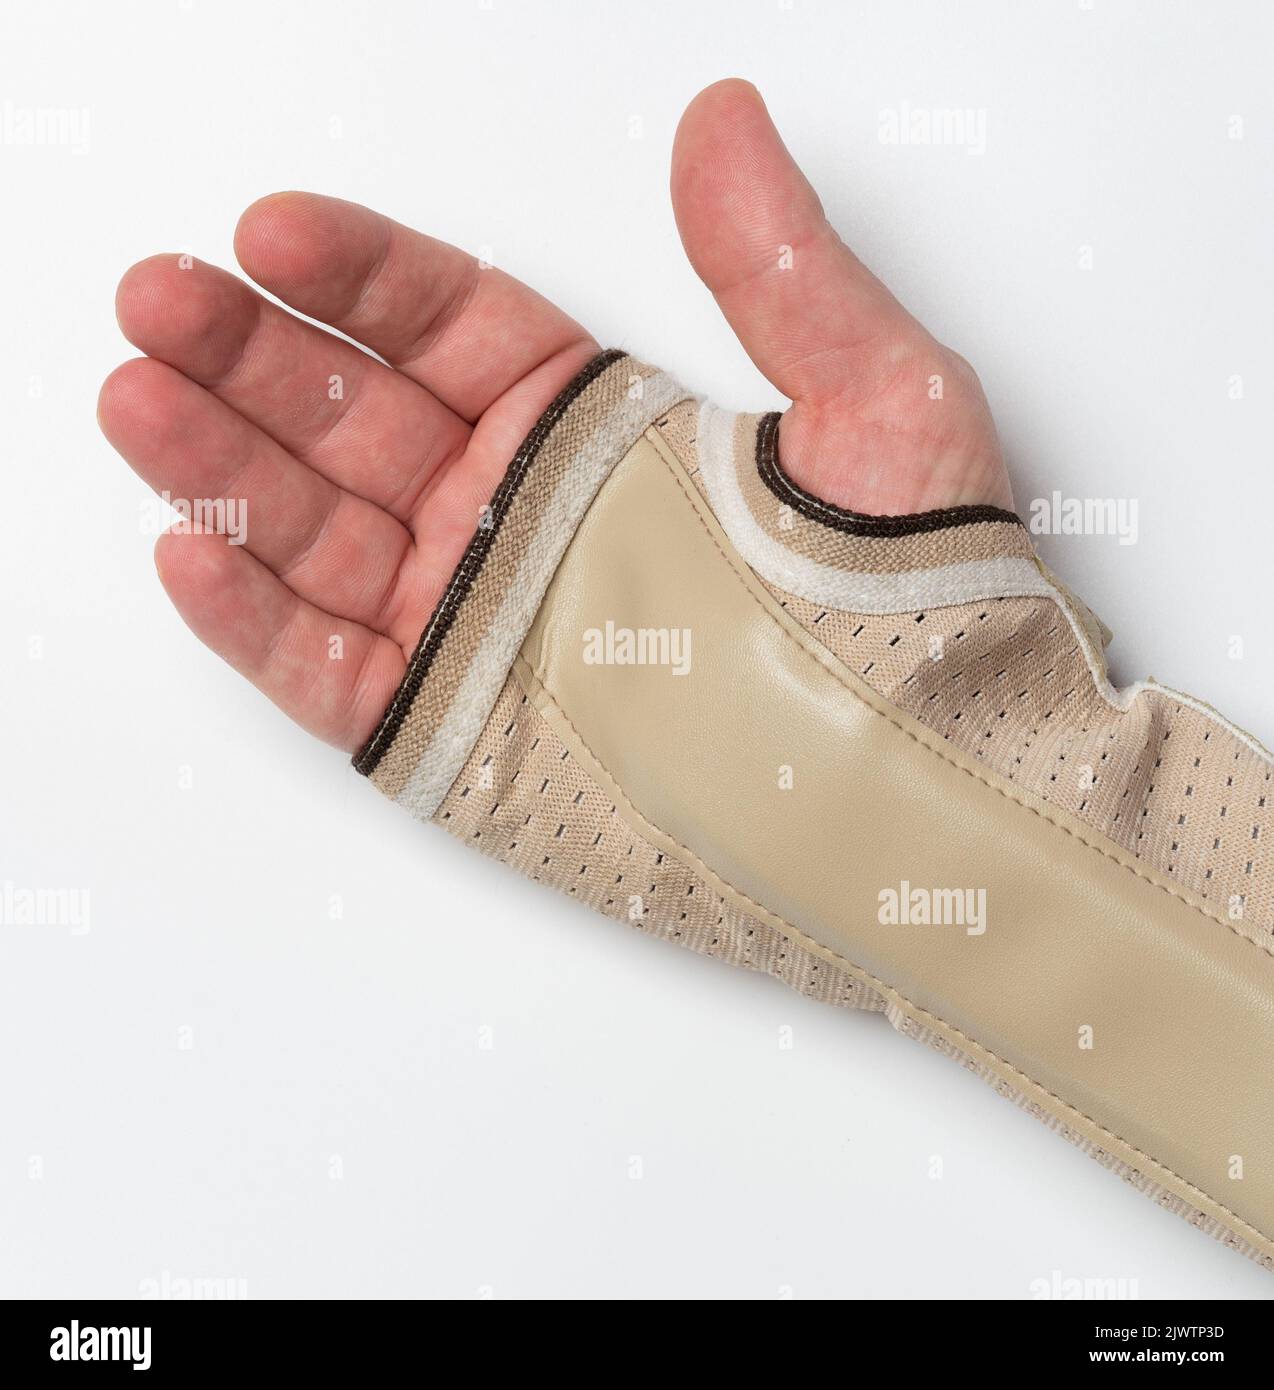 Paume de main ouverte avec bandage pour la fixation et la guérison trauma blessé isolé sur fond blanc studio Banque D'Images